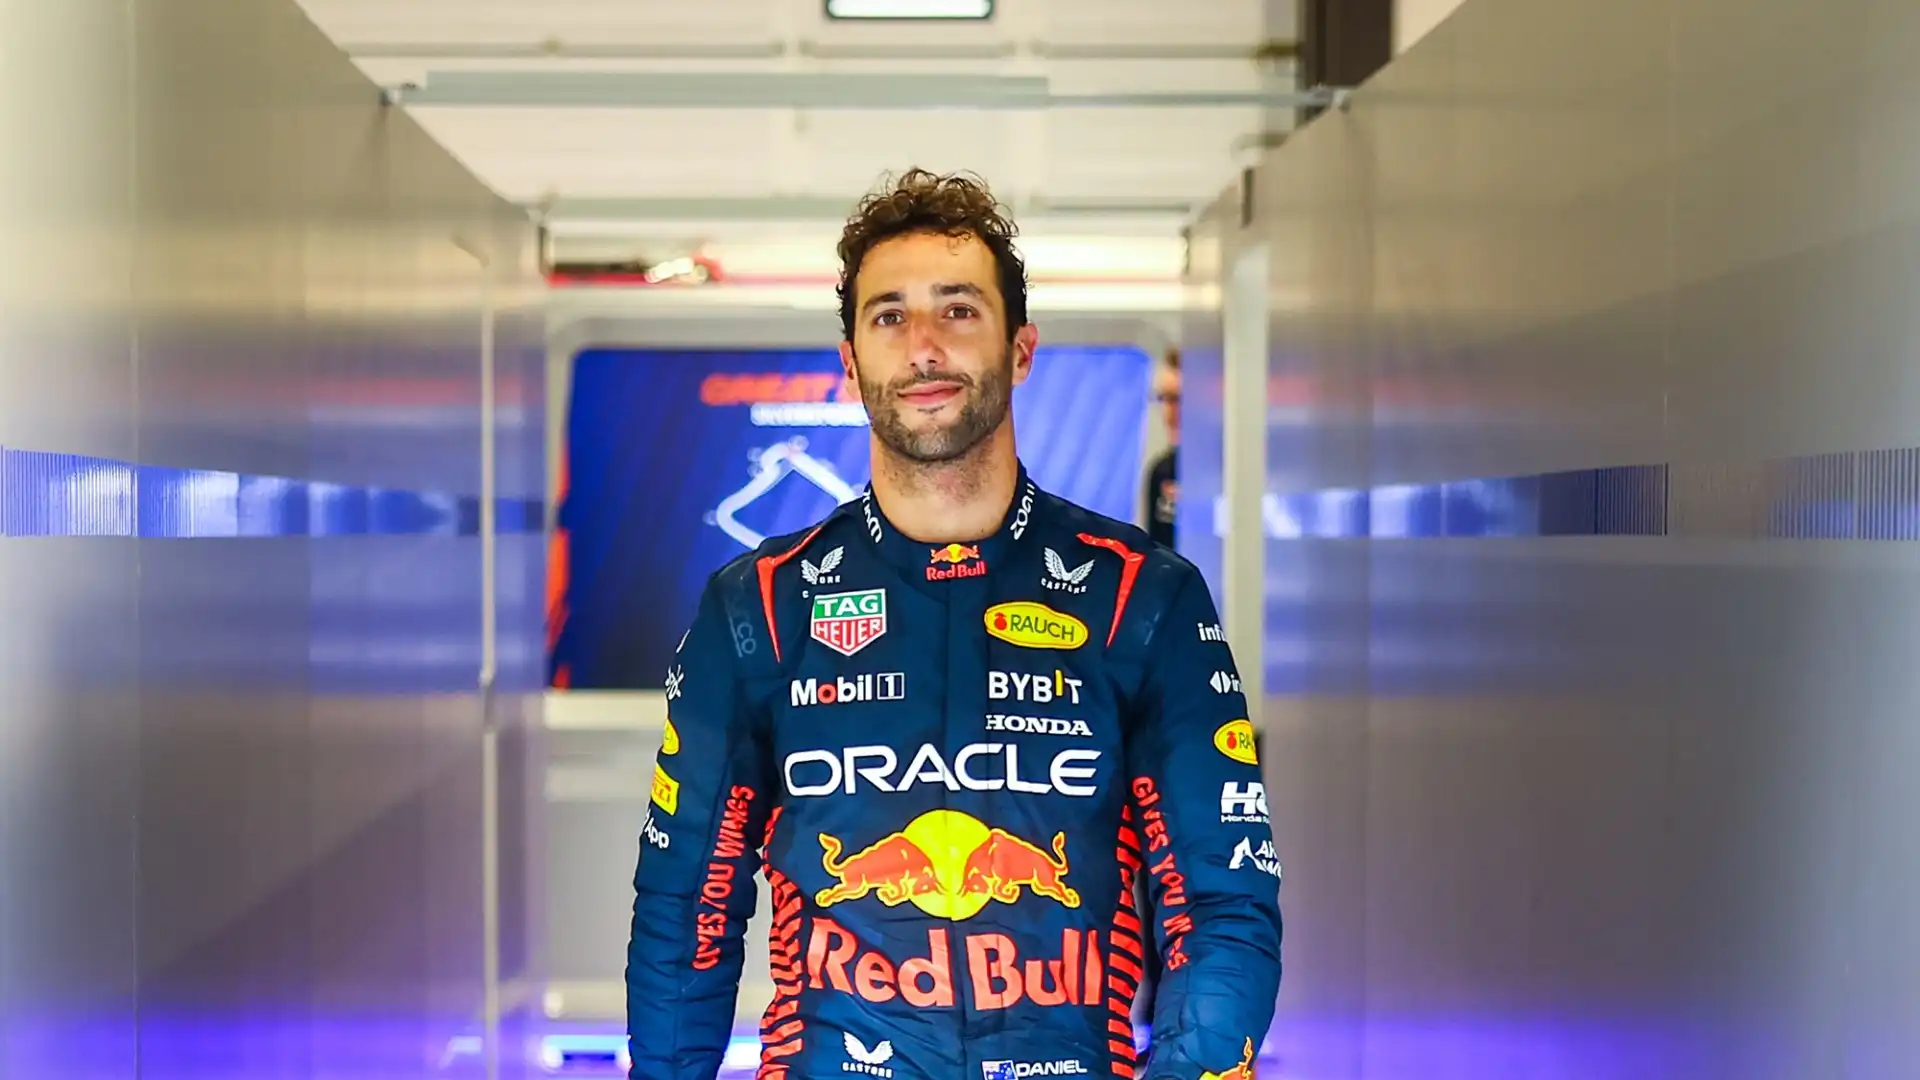 Tra i possibili sostituti di Perez c'è Daniel Ricciardo, già pilota Red Bull e compagno di squadra di Verstappen in passato